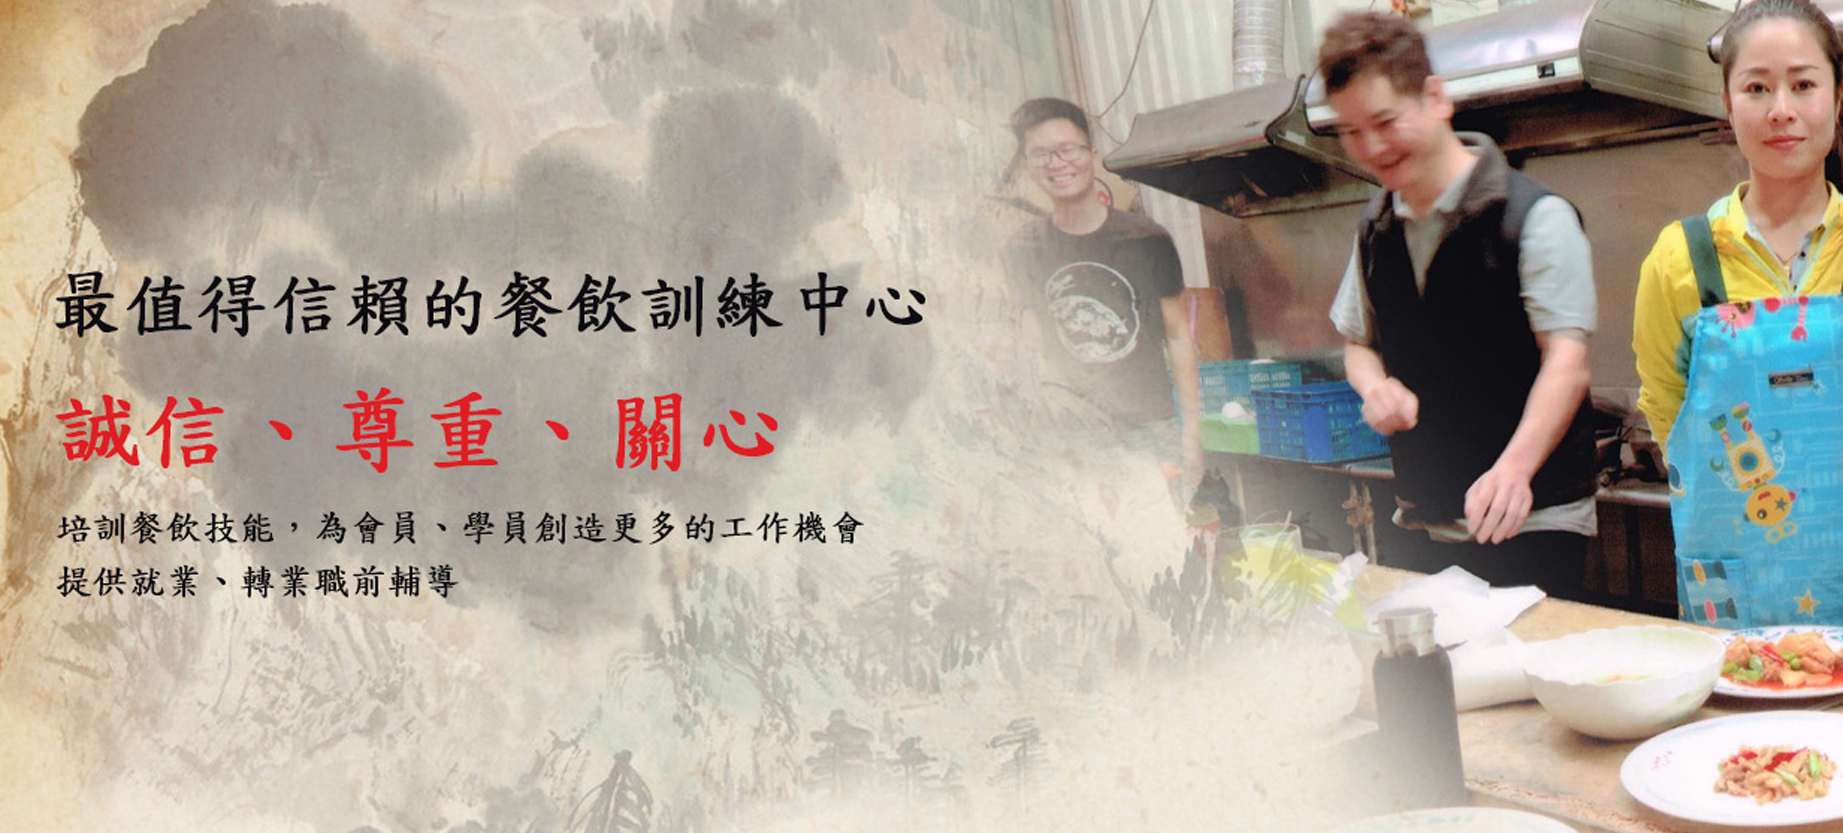 台南市中餐服務人員職業工會-網站形象圖